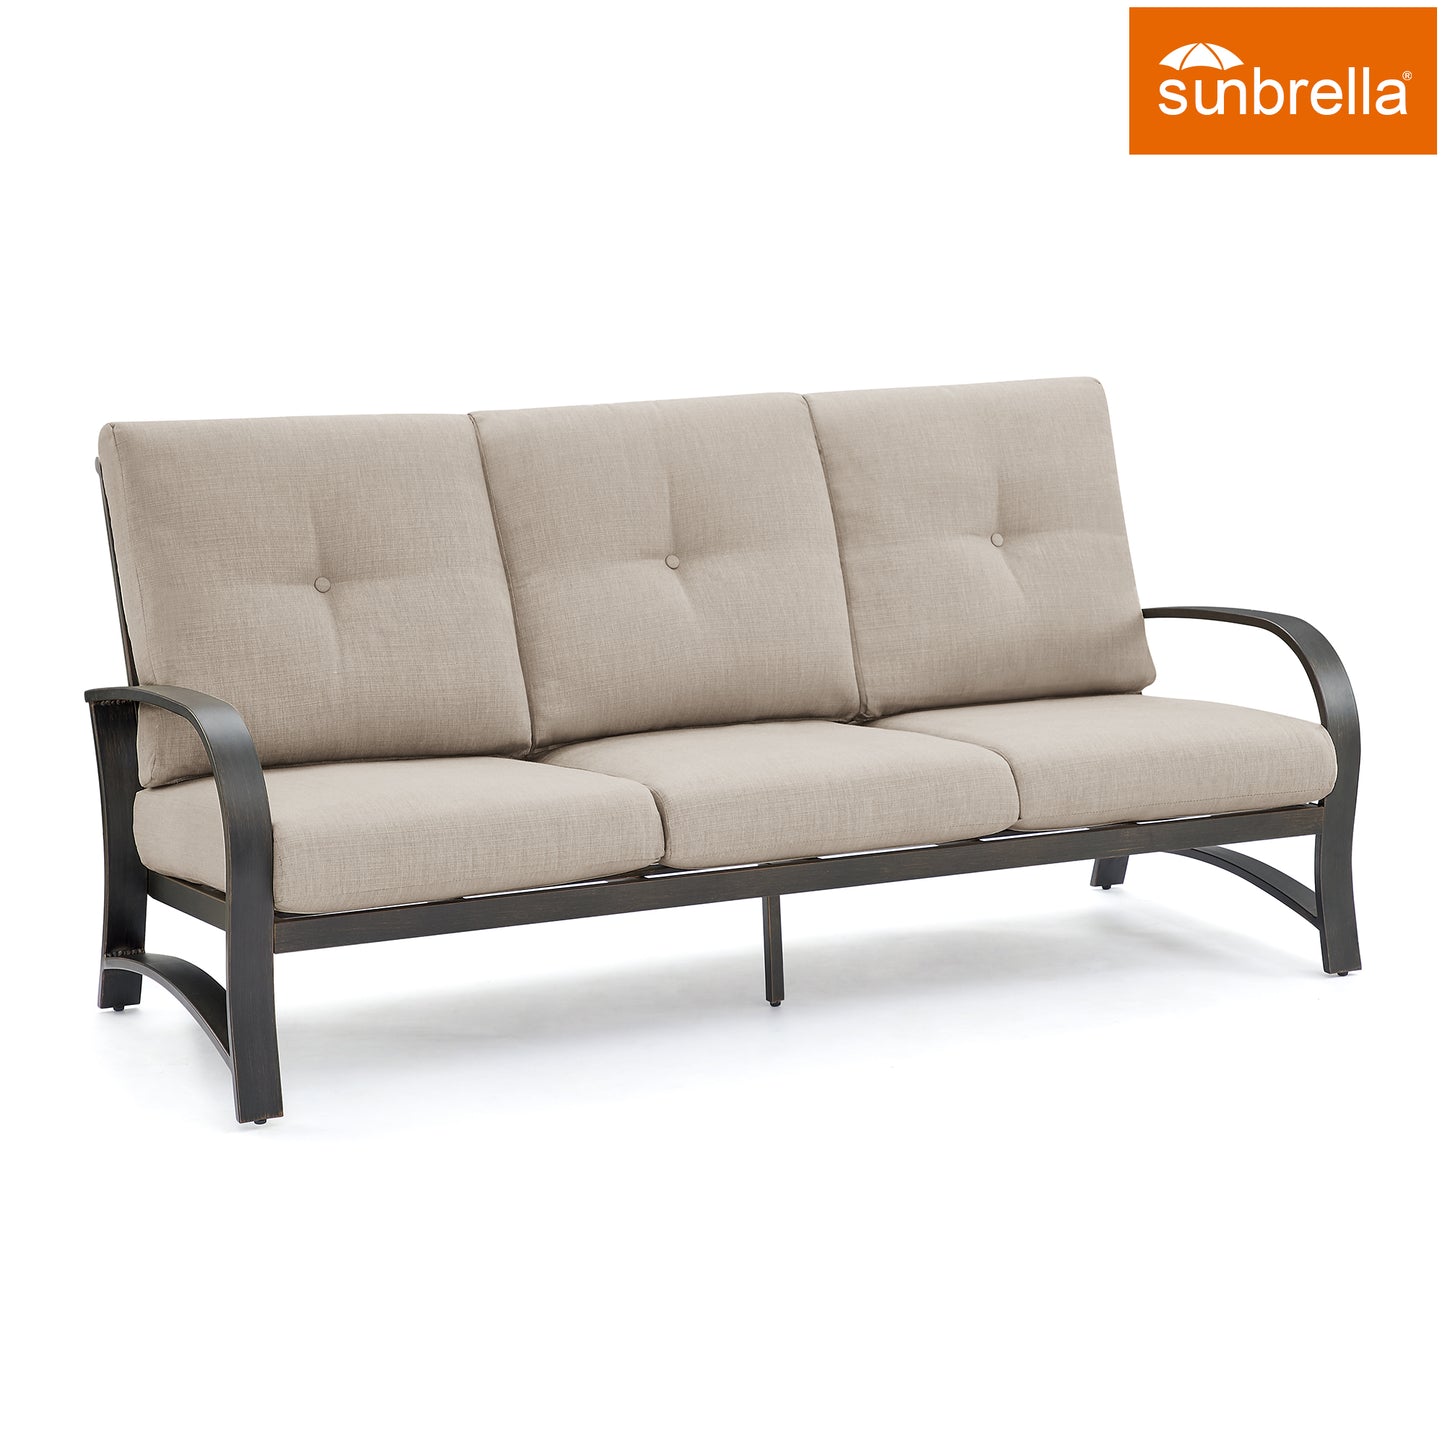 Outdoor/Indoor Aluminum 3-Seater Patio Conversation Sofa with Sunbrella Cushions